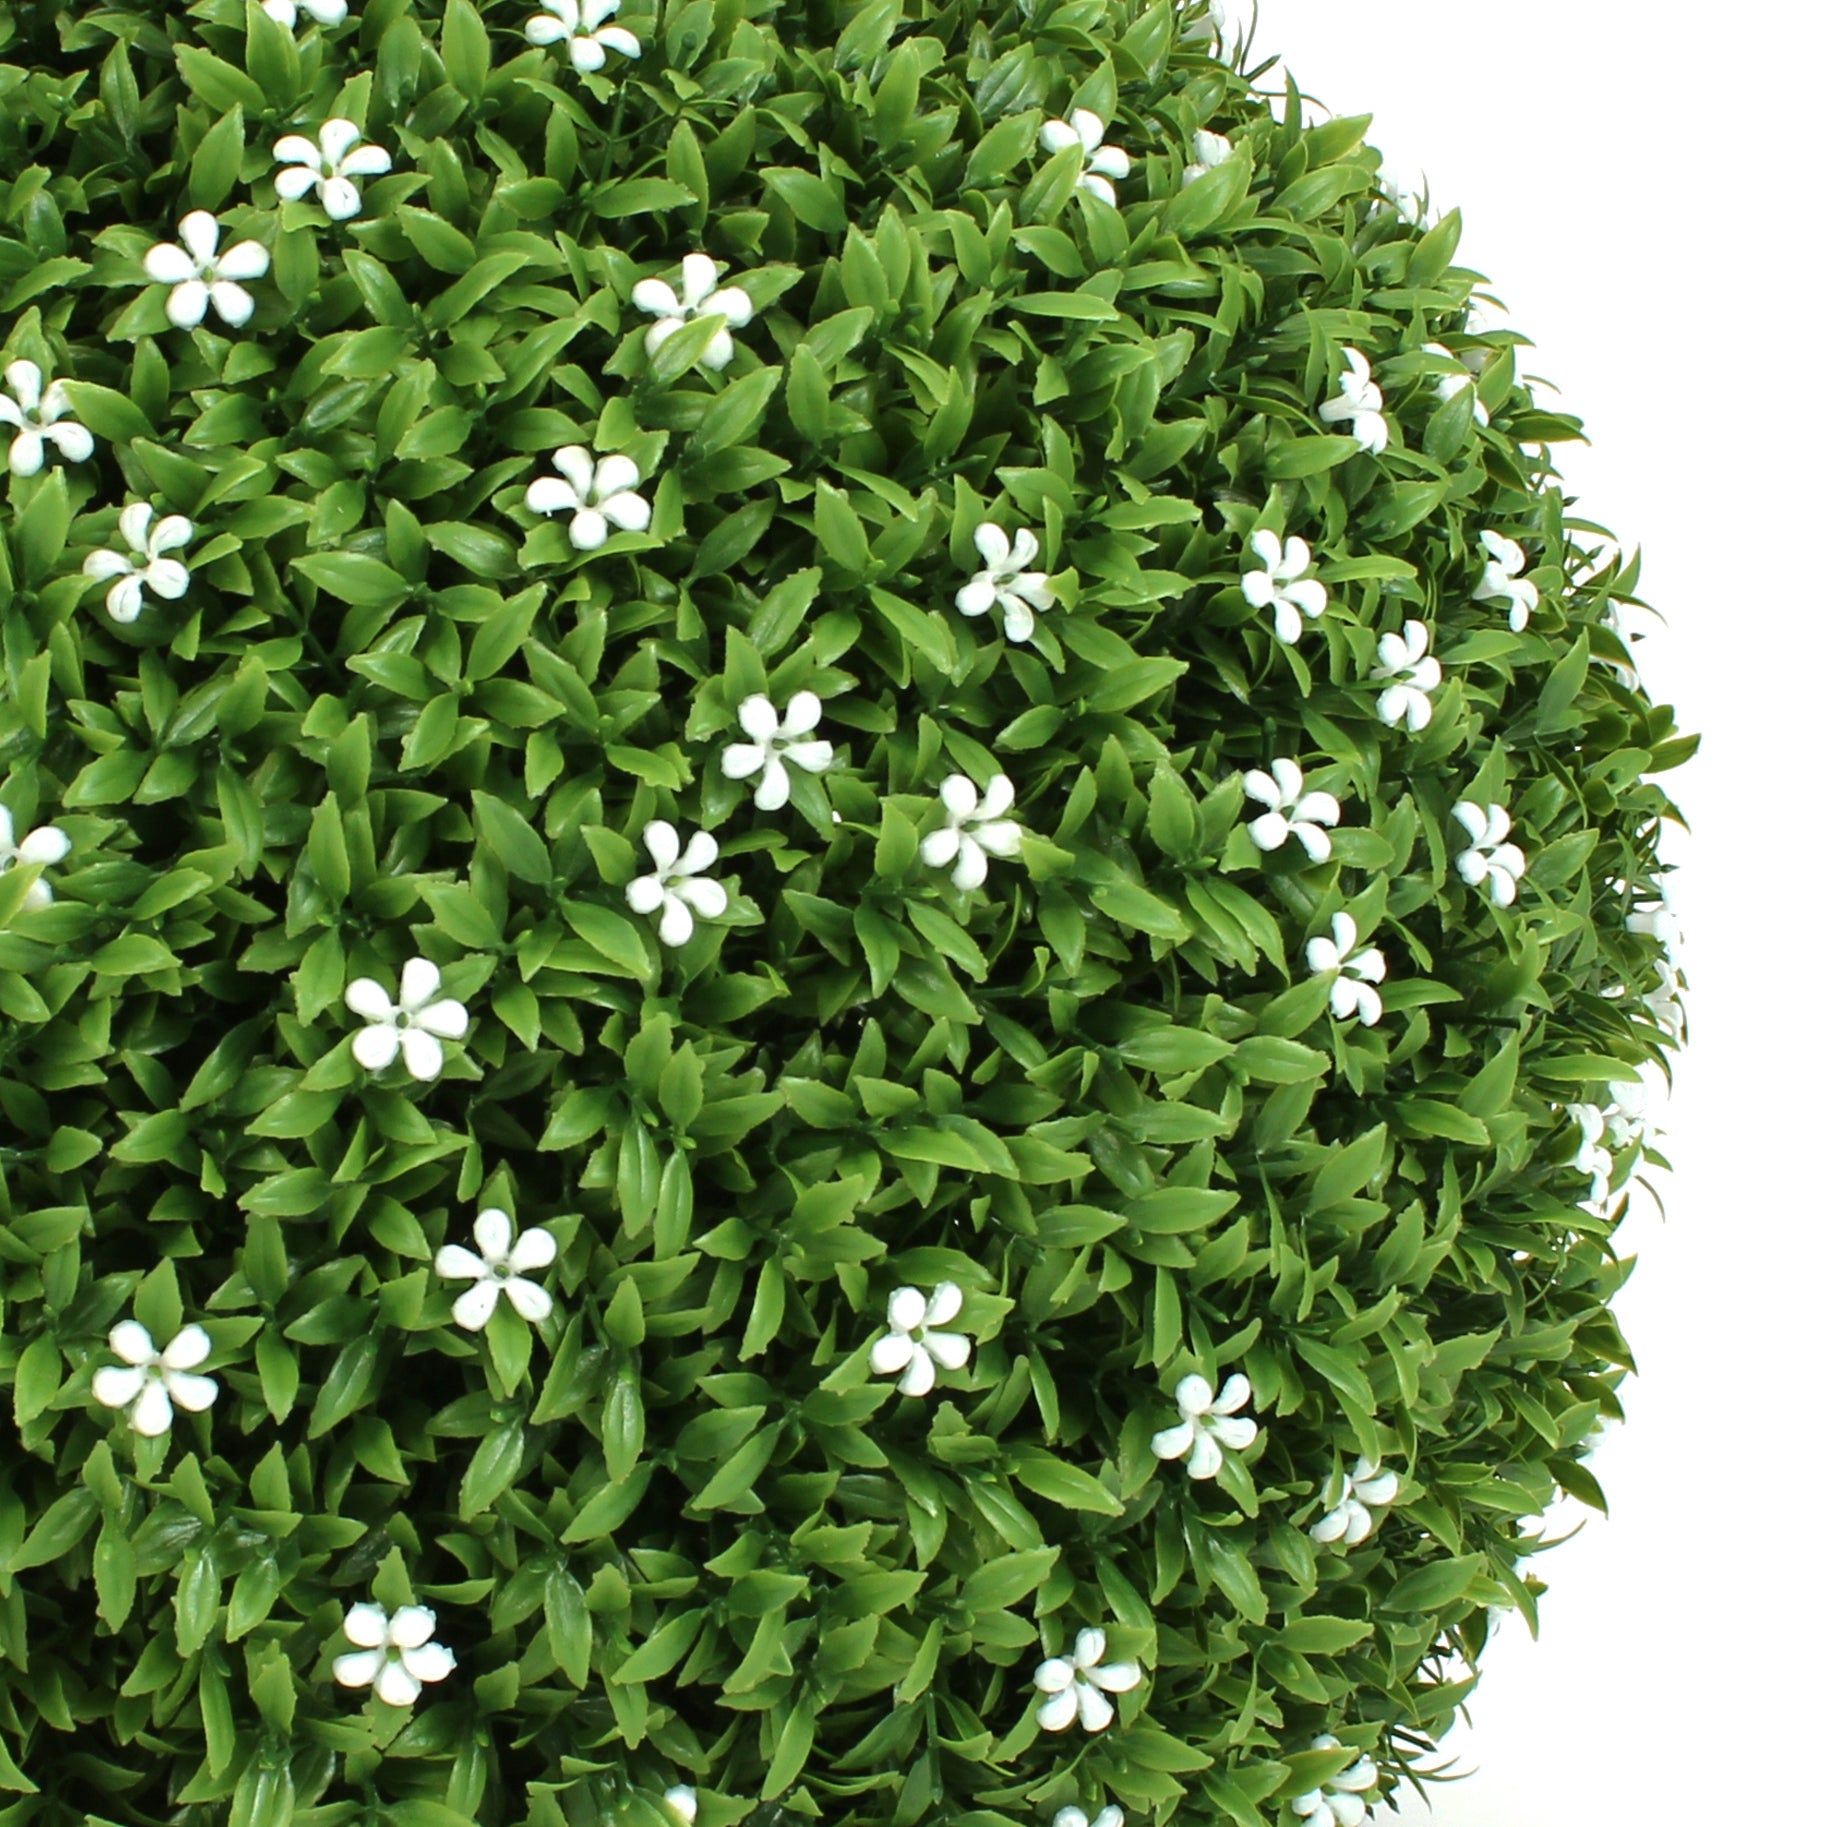 11 Medium White Flower Topiary Ball – 3rd Street Inn Greenery